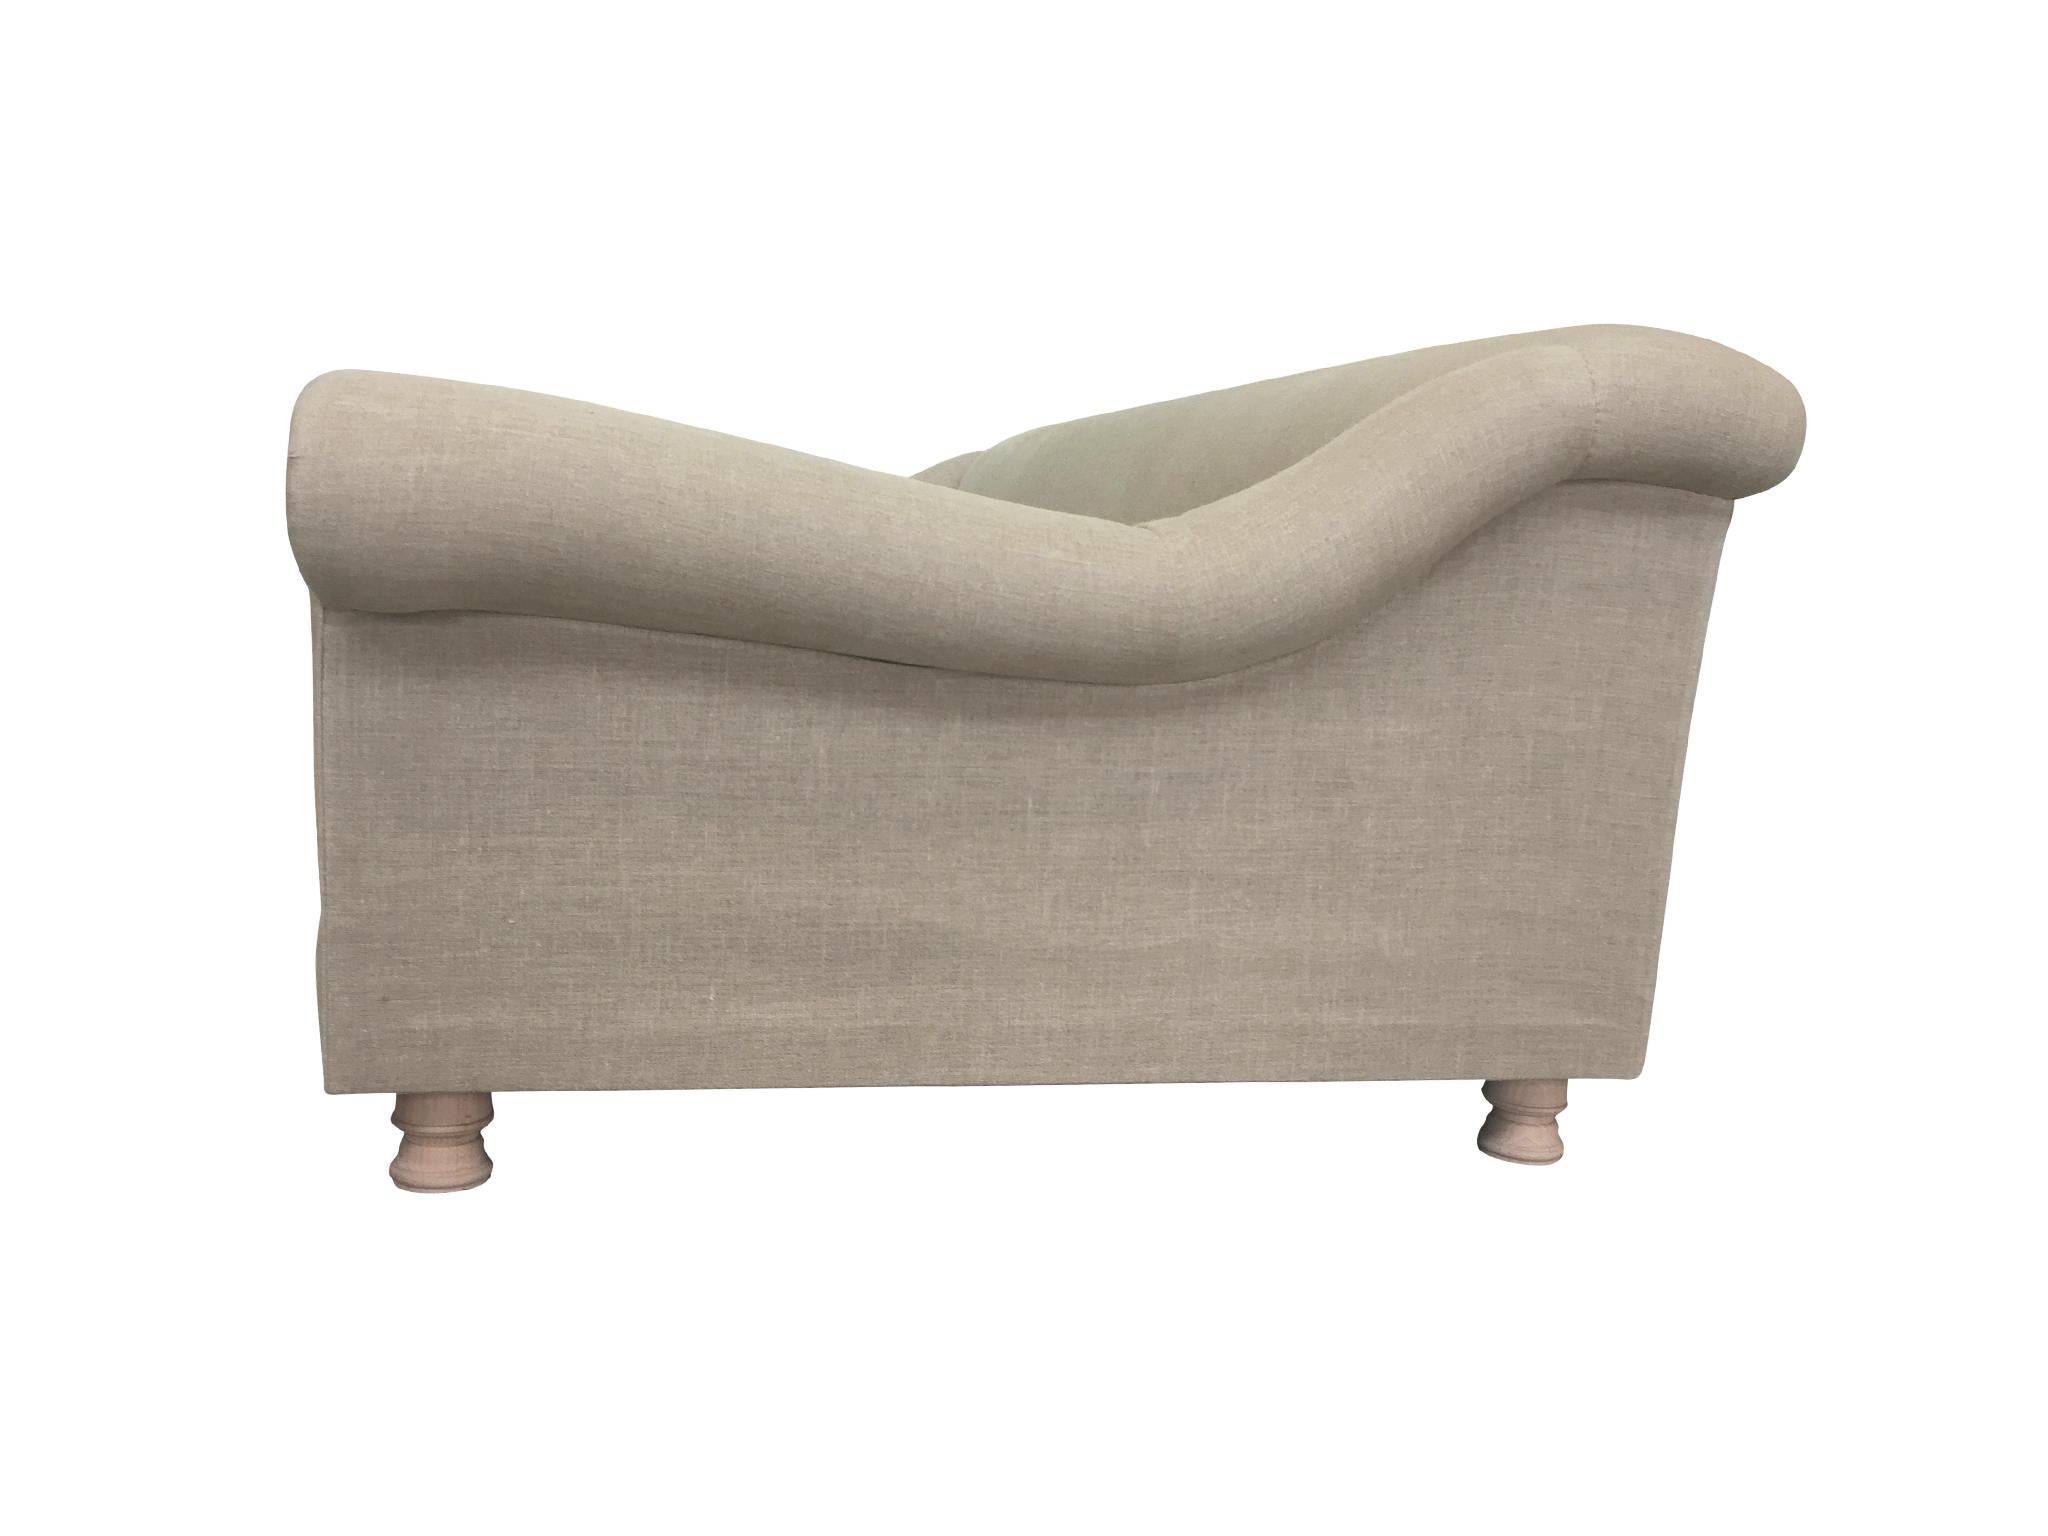 Axel Vervoordt Custom Sofa in Belgian Linen In Good Condition In New York, NY